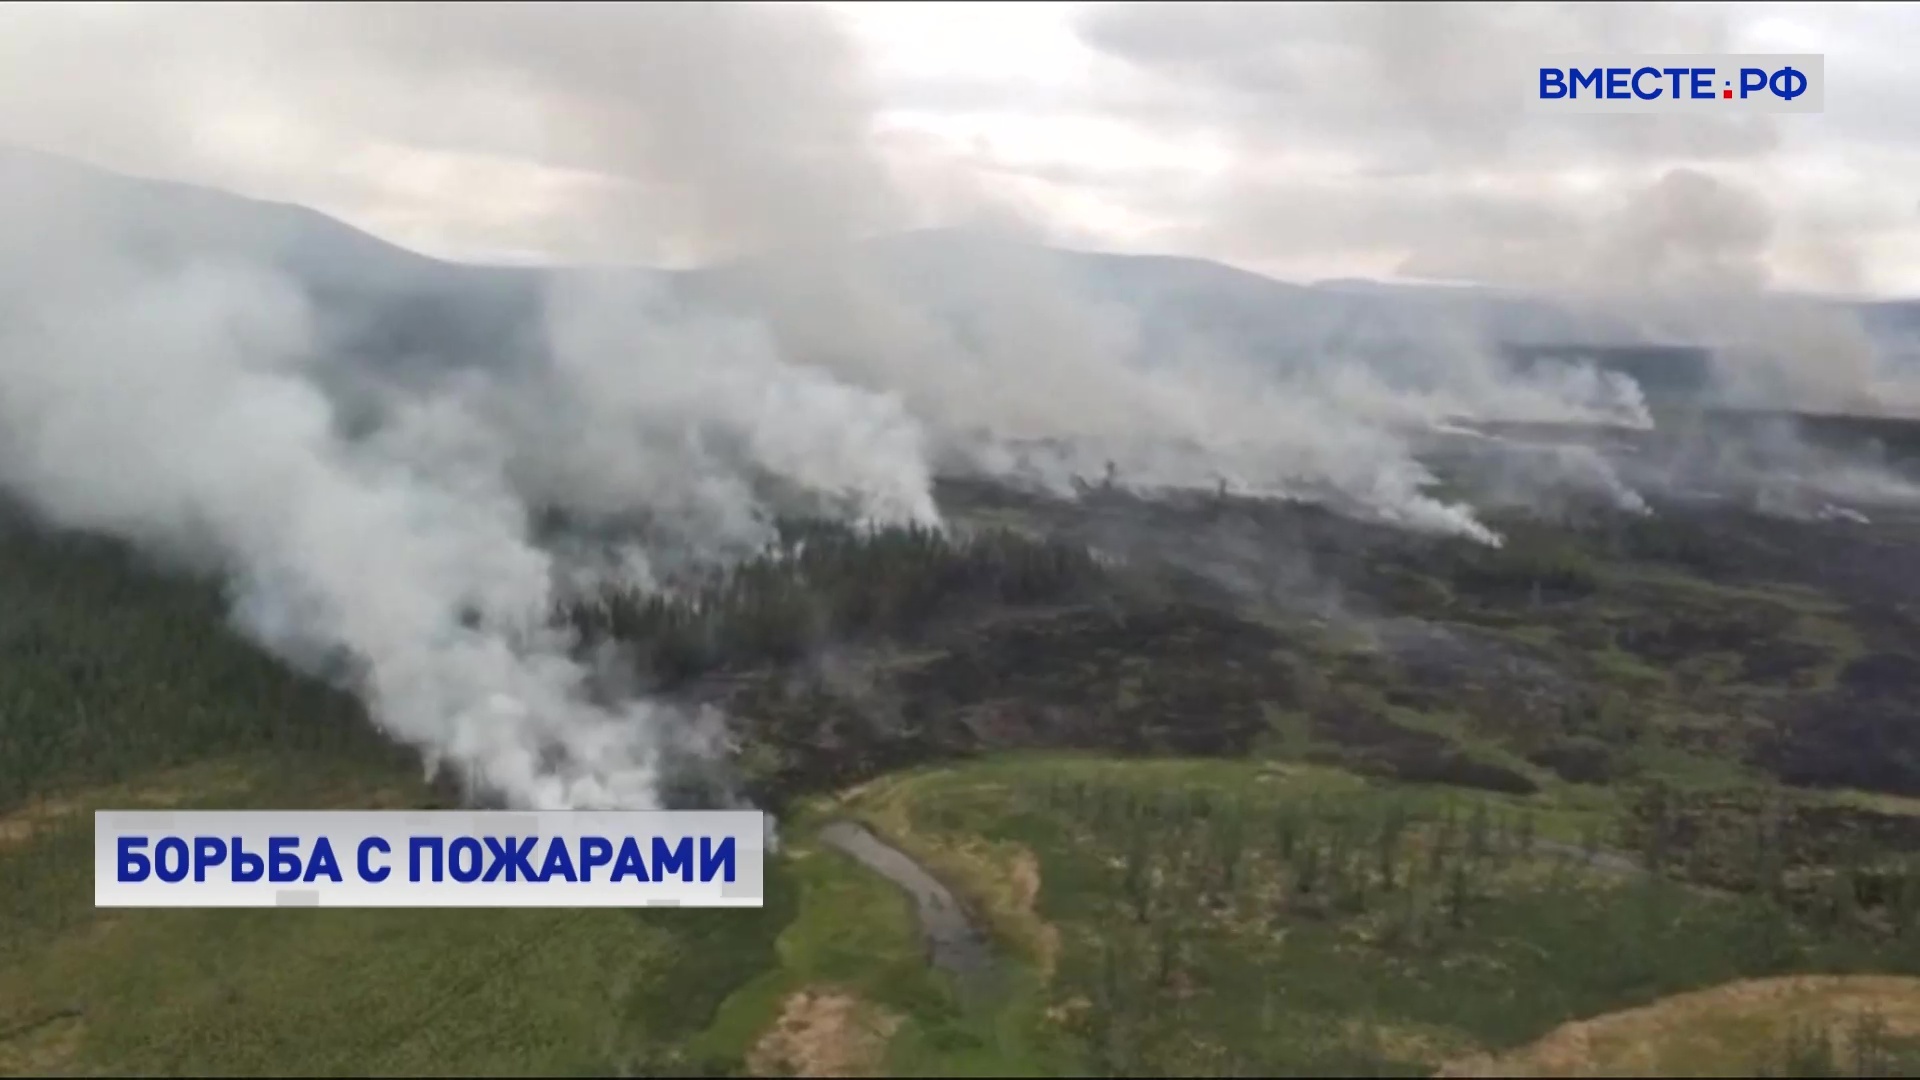  Для тушения лесных пожаров в регионы перебрасывают парашютистов-десантников